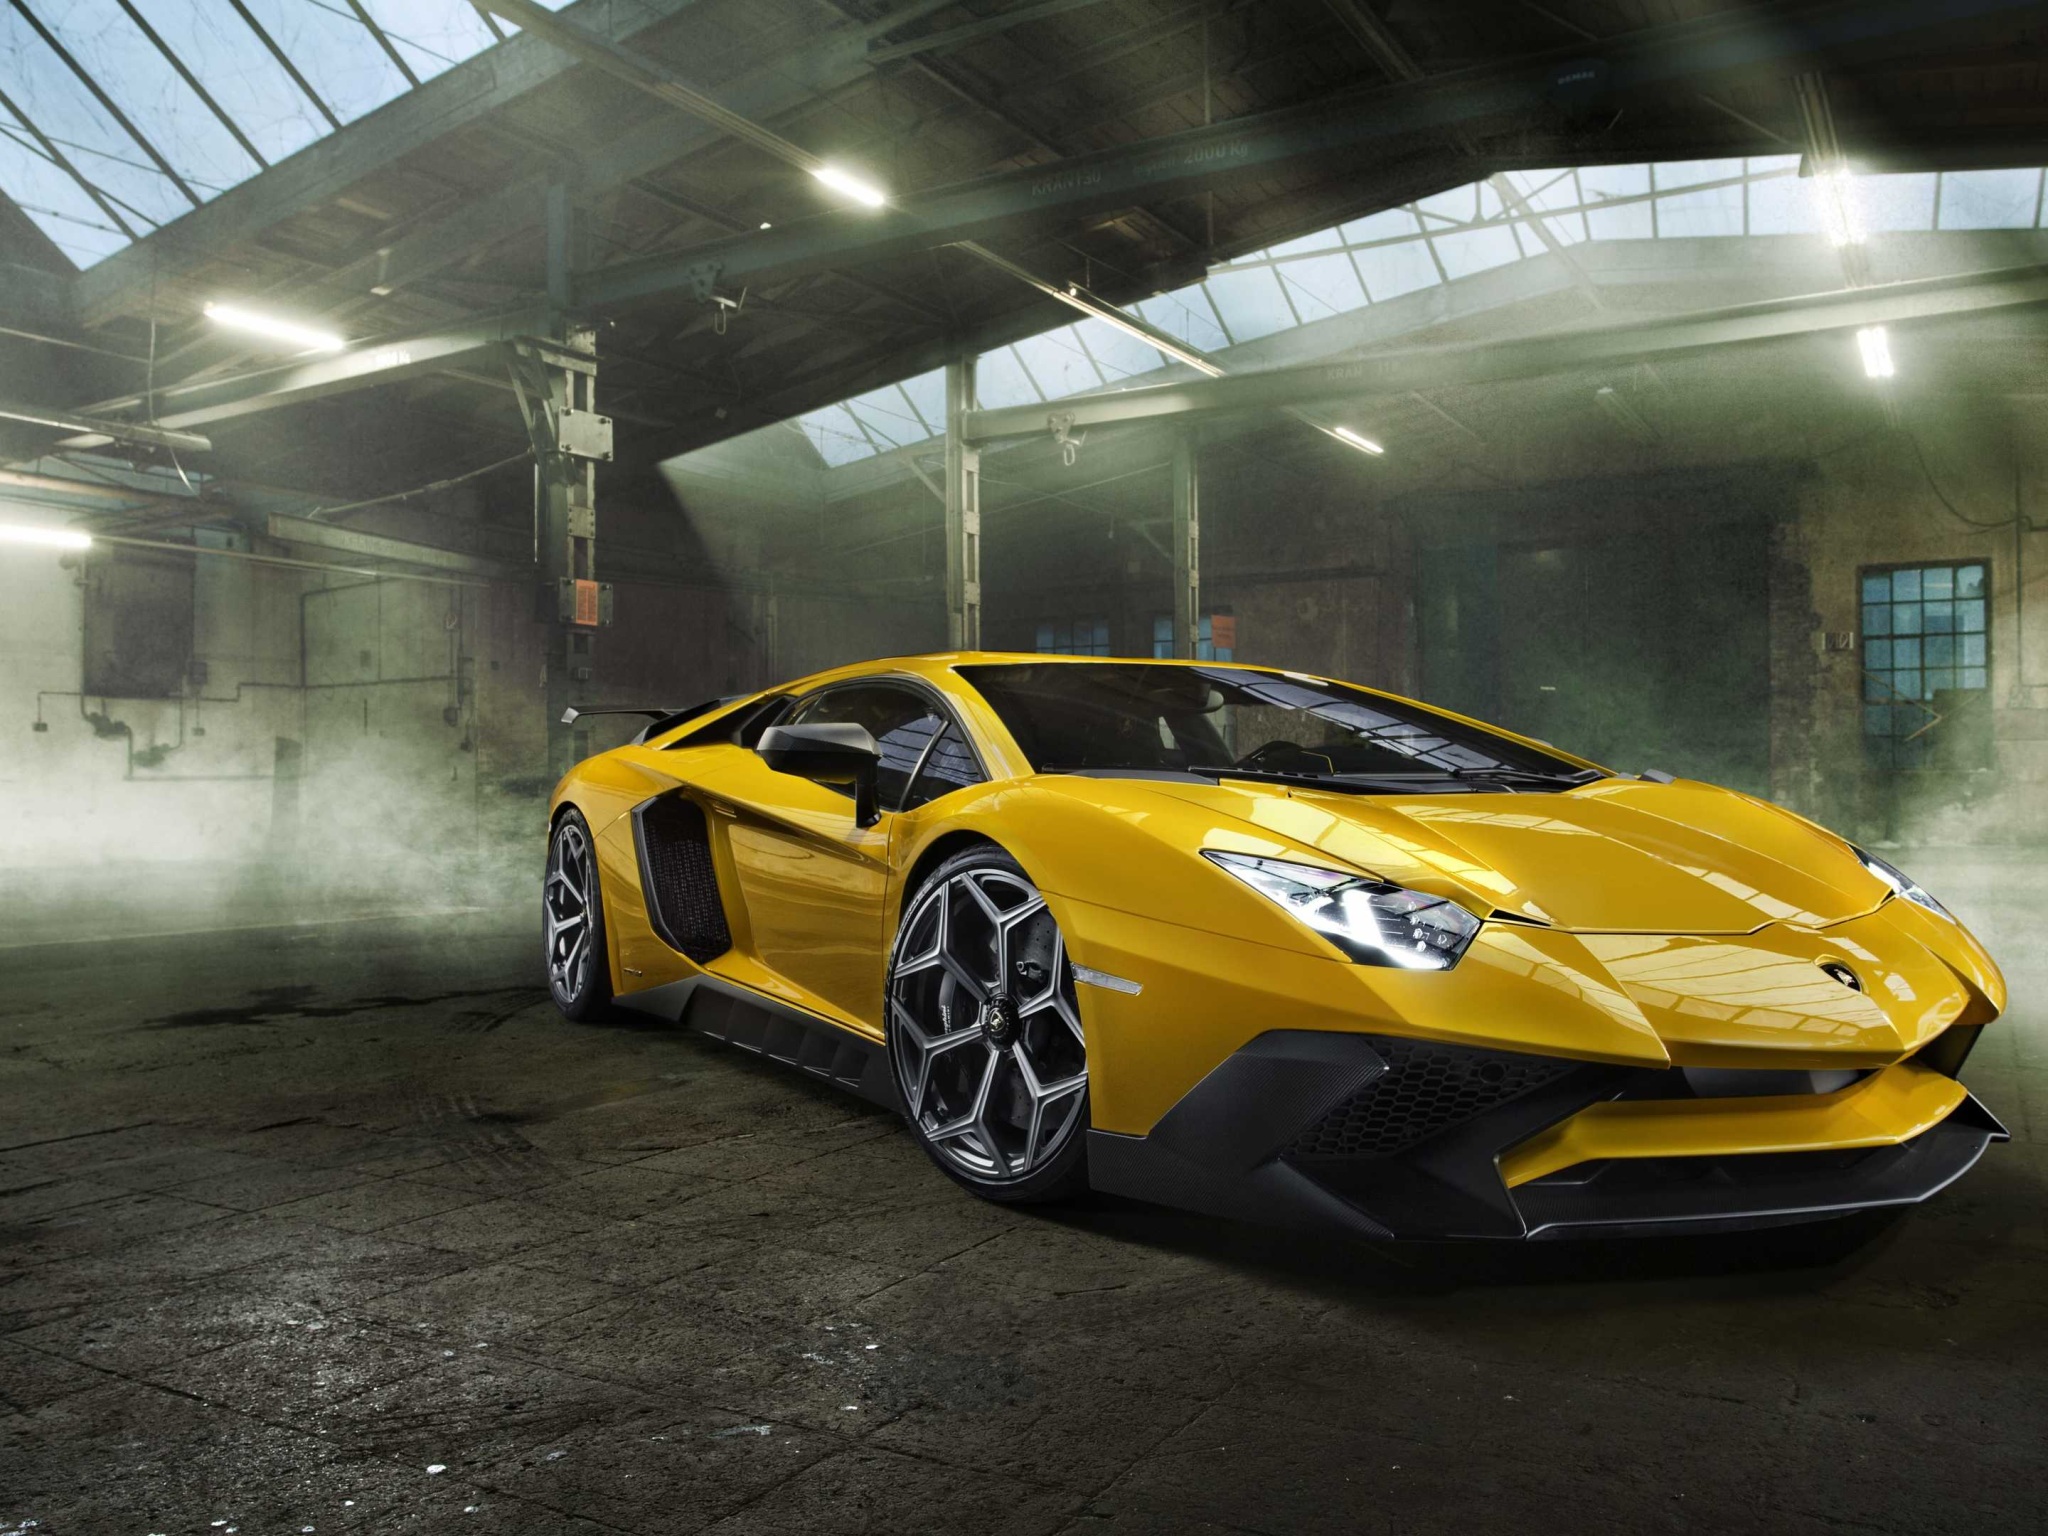 Lamborghini Aventador: Bạn đang tìm kiếm một siêu xe hoàn hảo để thực sự trở thành tâm điểm của đường phố? Lamborghini Aventador chắc chắn là sự lựa chọn tuyệt vời với kết cấu cơ khí cao cấp và thiết kế quyến rũ, hứa hẹn sẽ khiến bạn cảm thấy như một người nổi tiếng. Nhấn vào hình ảnh để ngắm nhìn thân xe vô cùng đẹp mắt!